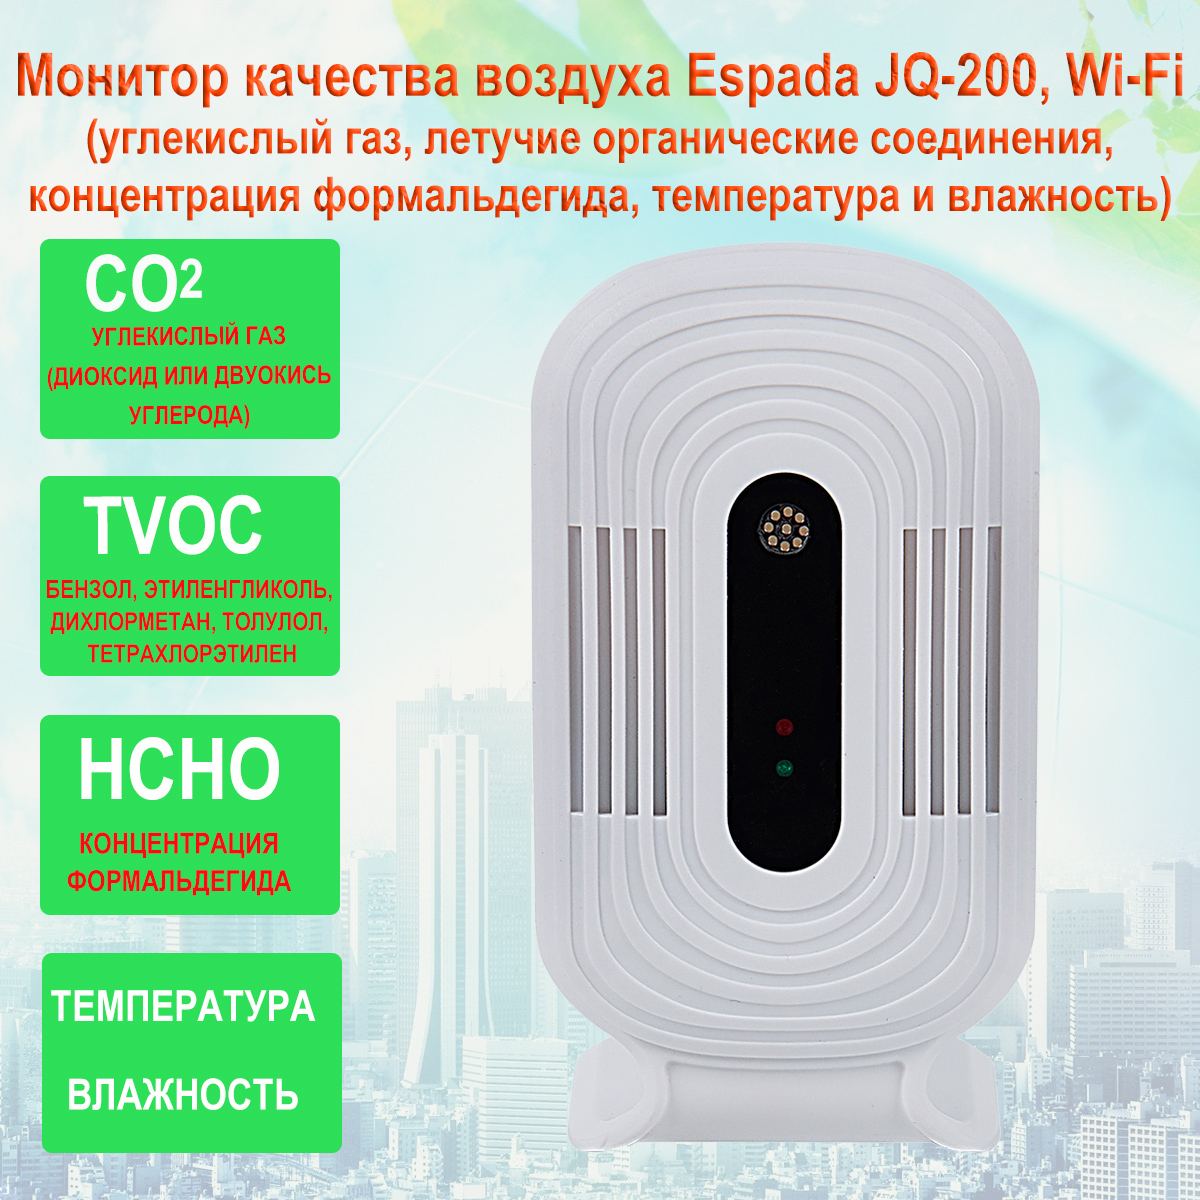 Монитор качества воздуха Espada JQ-200, Wi-Fi / HCHO, TVOC, eCO2, температуры и влажности /